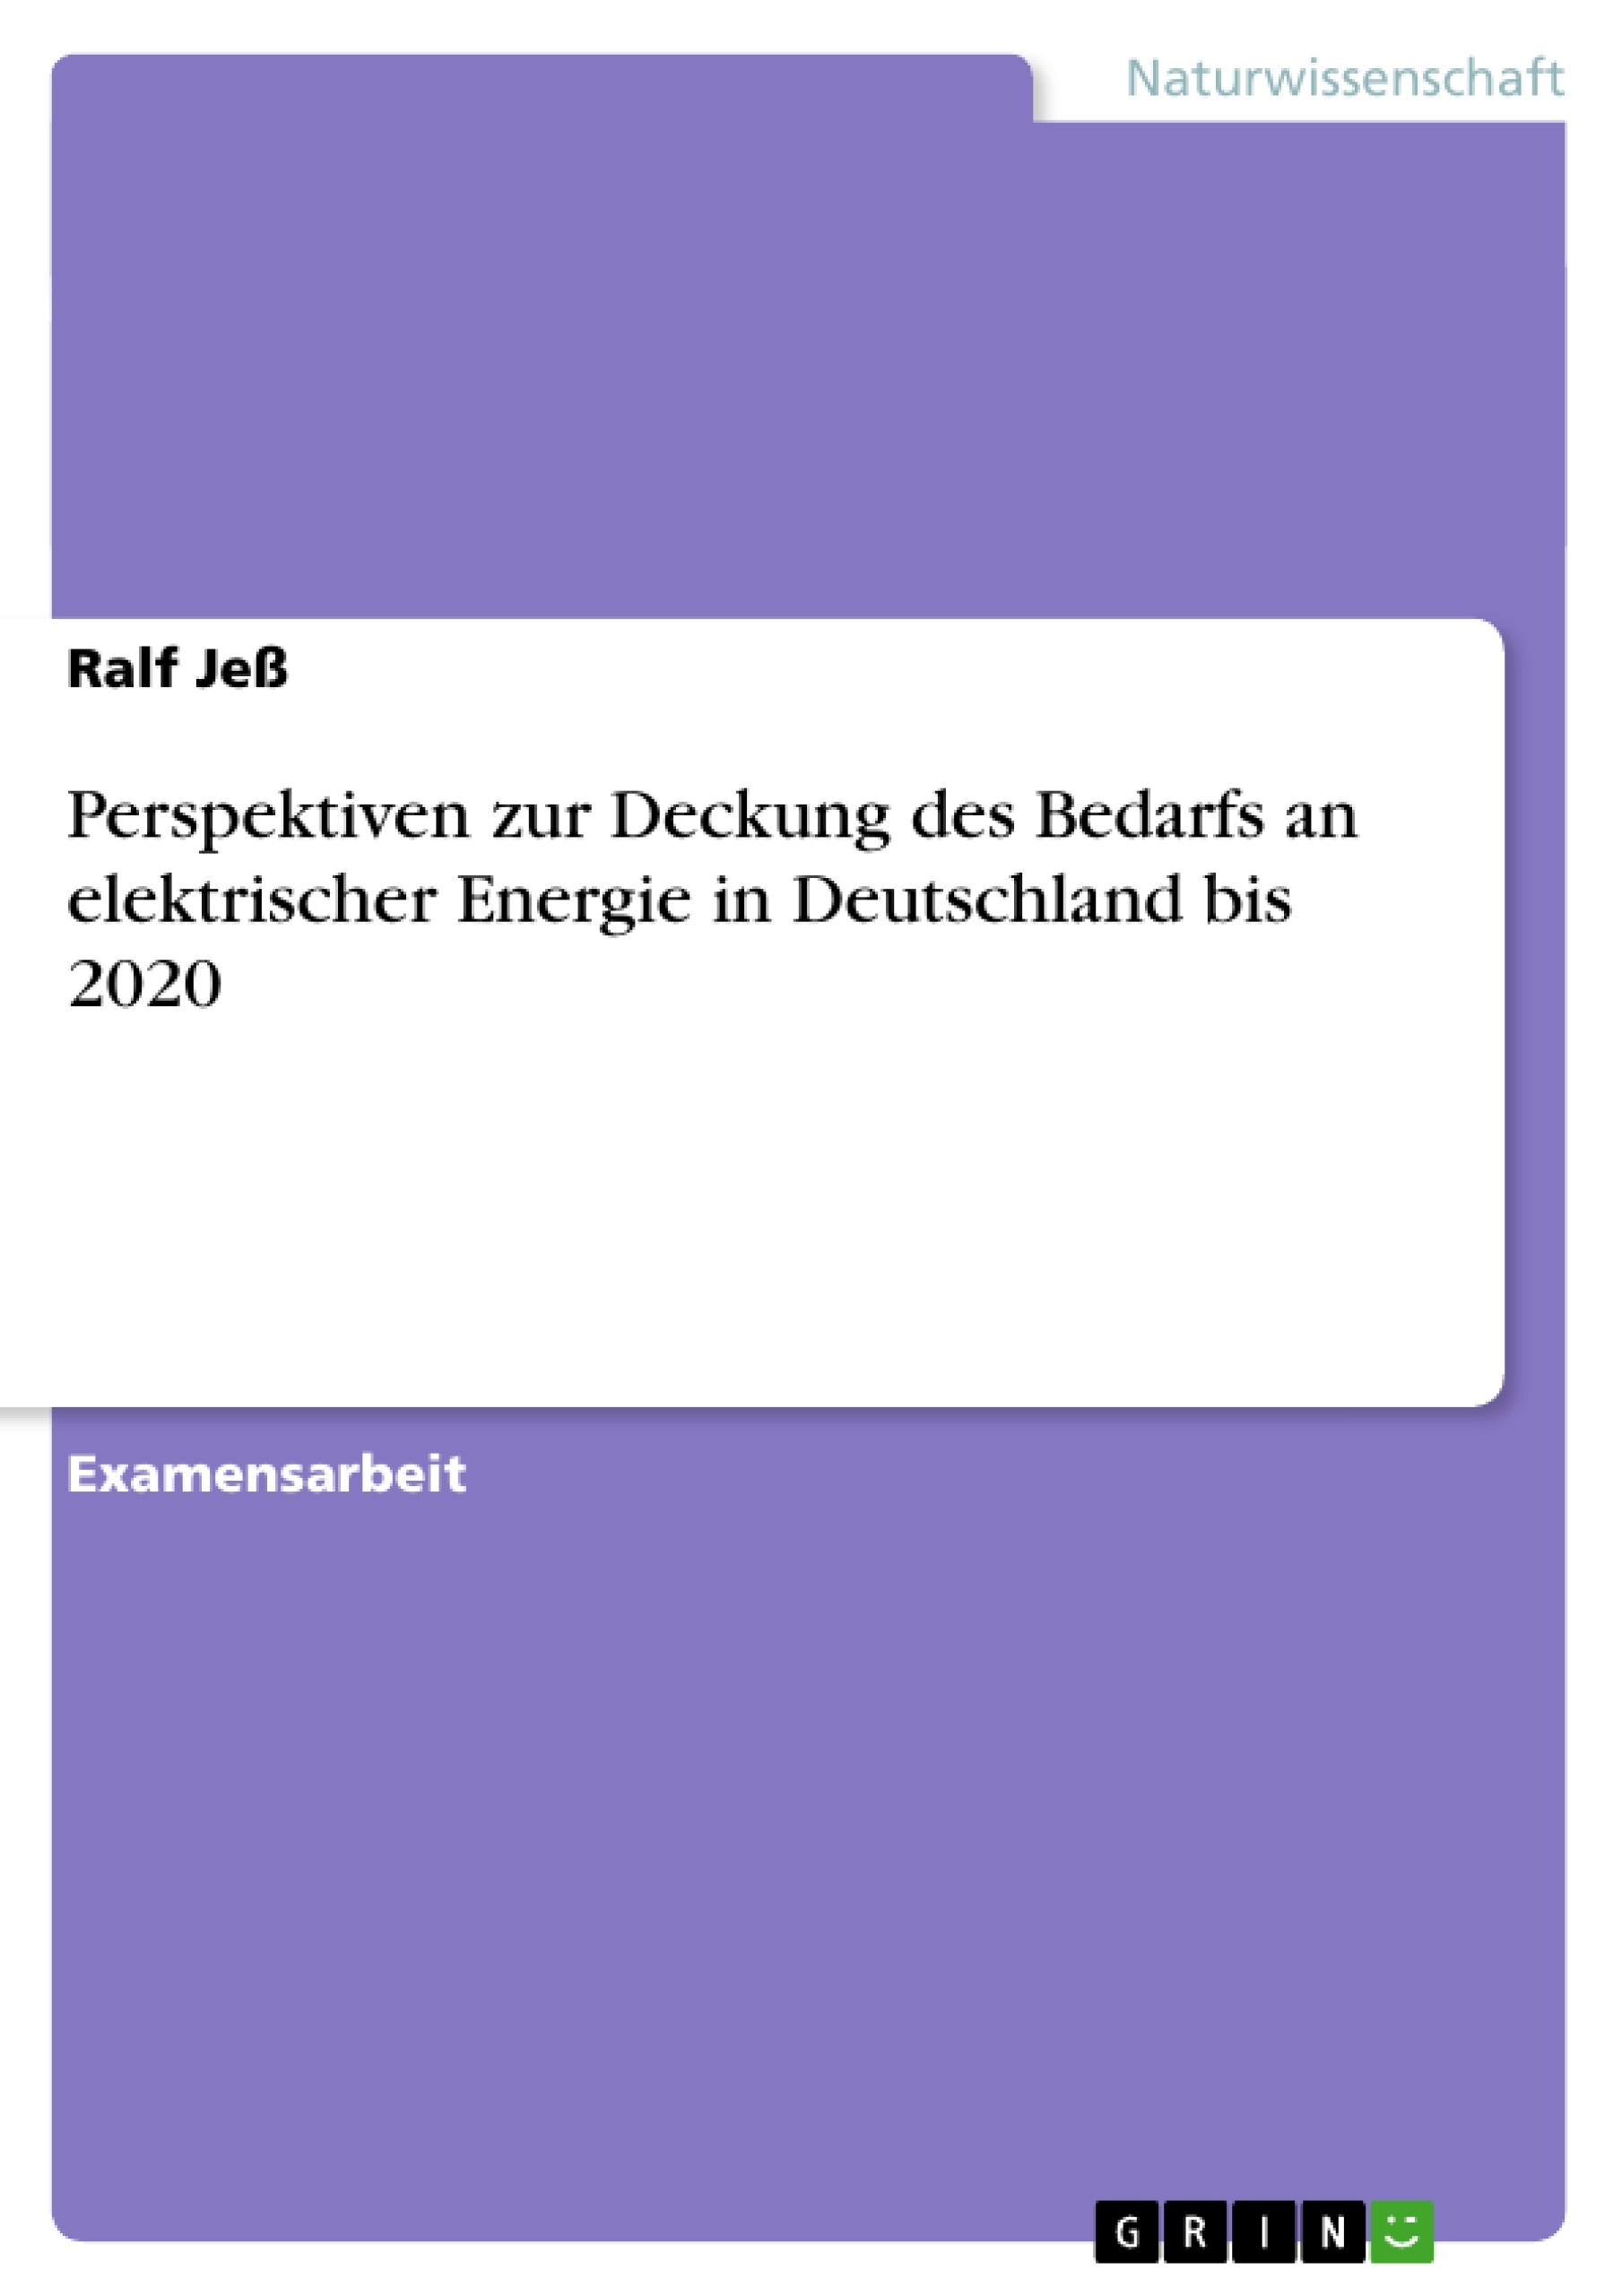 Titre: Perspektiven zur Deckung des Bedarfs an elektrischer Energie in Deutschland bis 2020